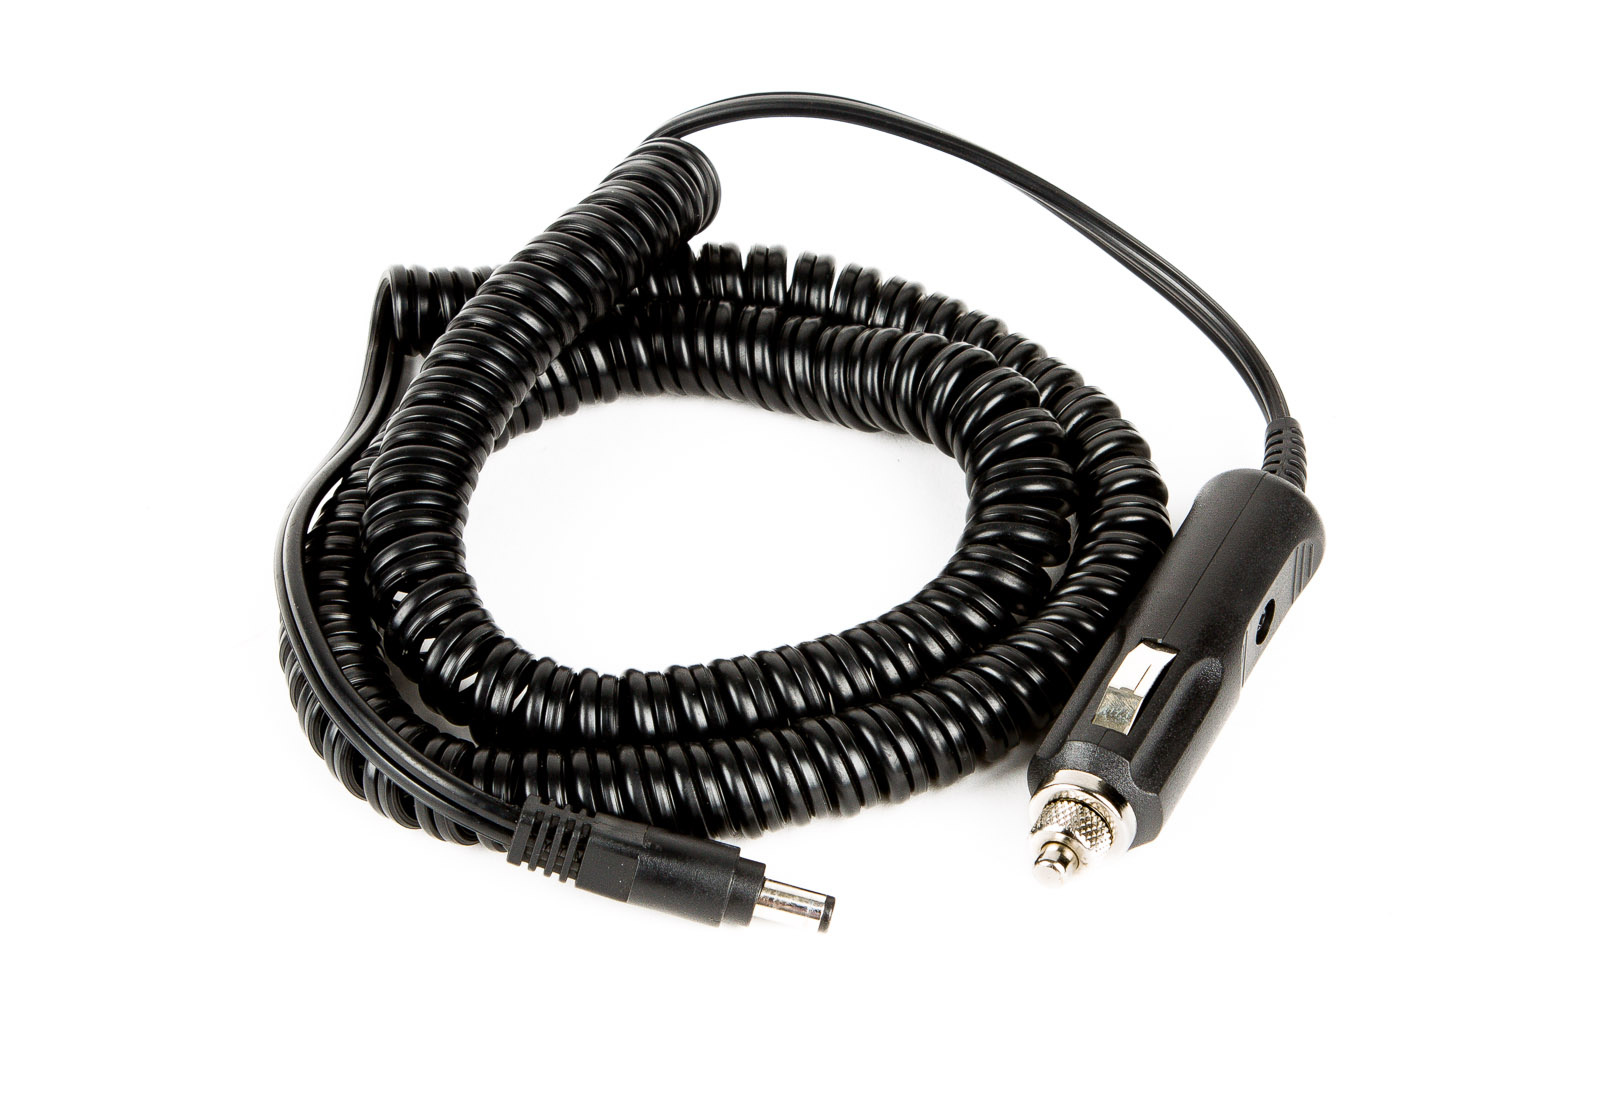 Kessler 12v DC Power adapter cable